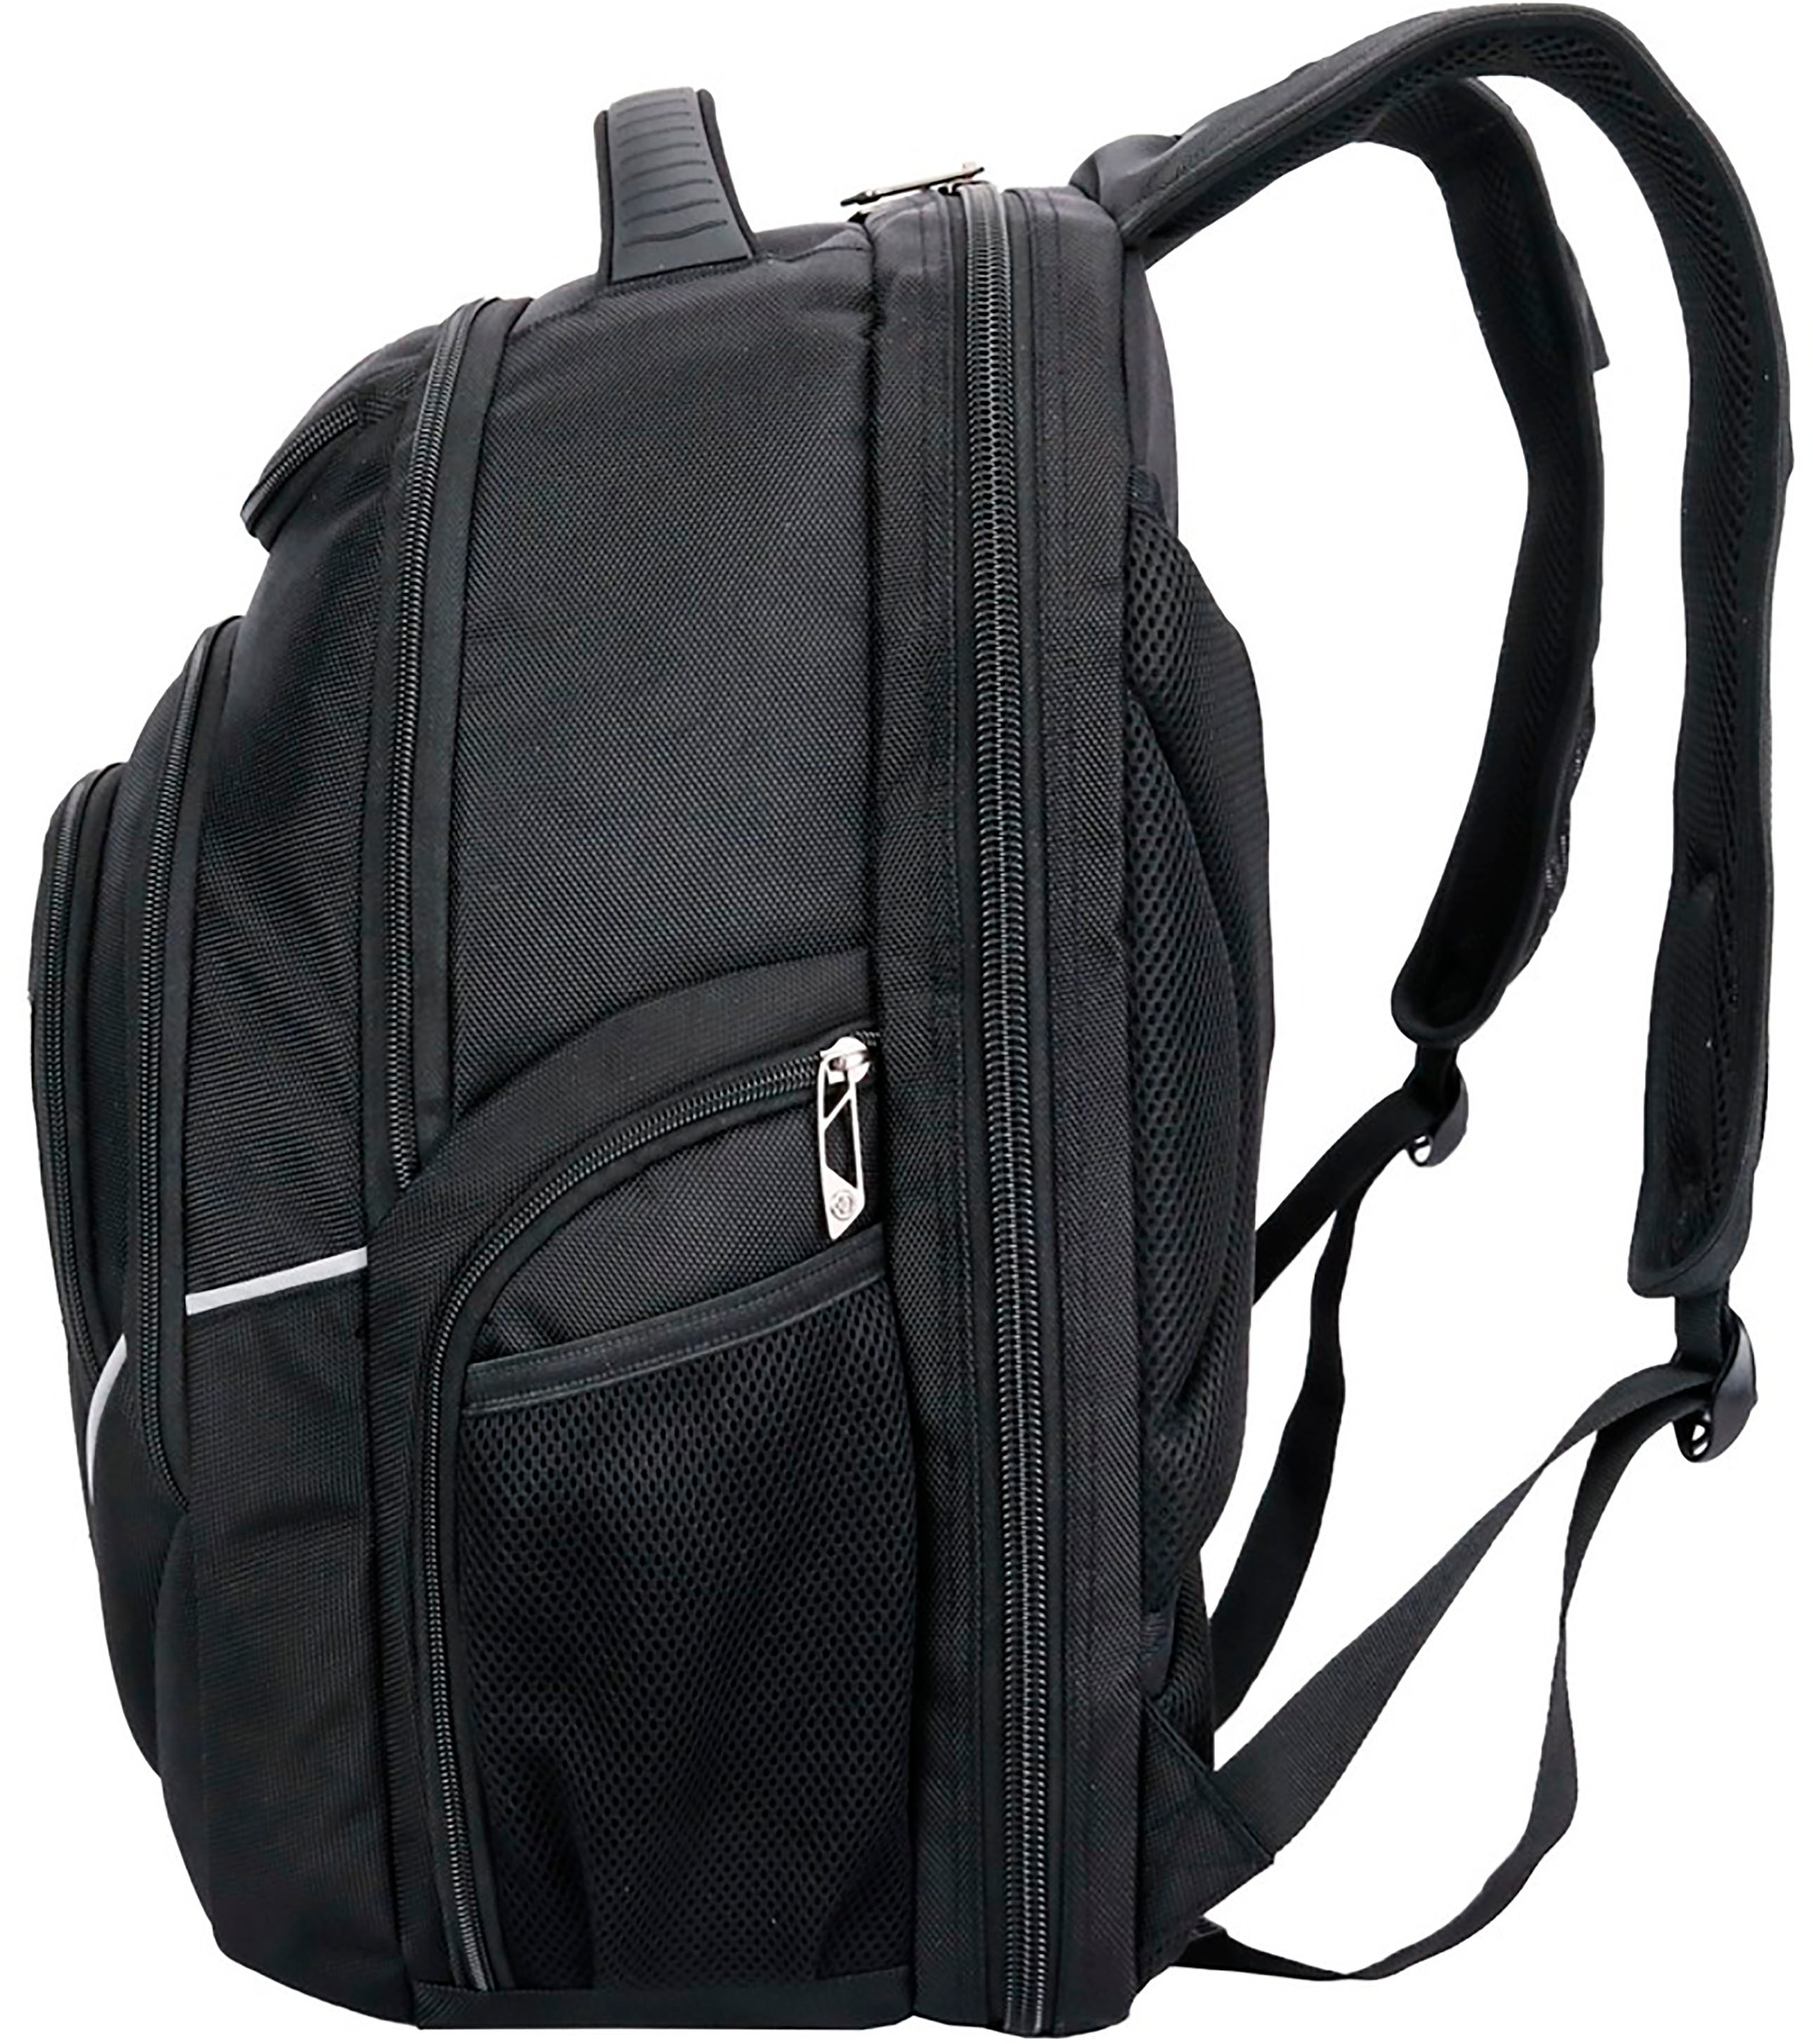 Customer Reviews: Swissdigital Design Terabyte TSA-friendly Backpack ...